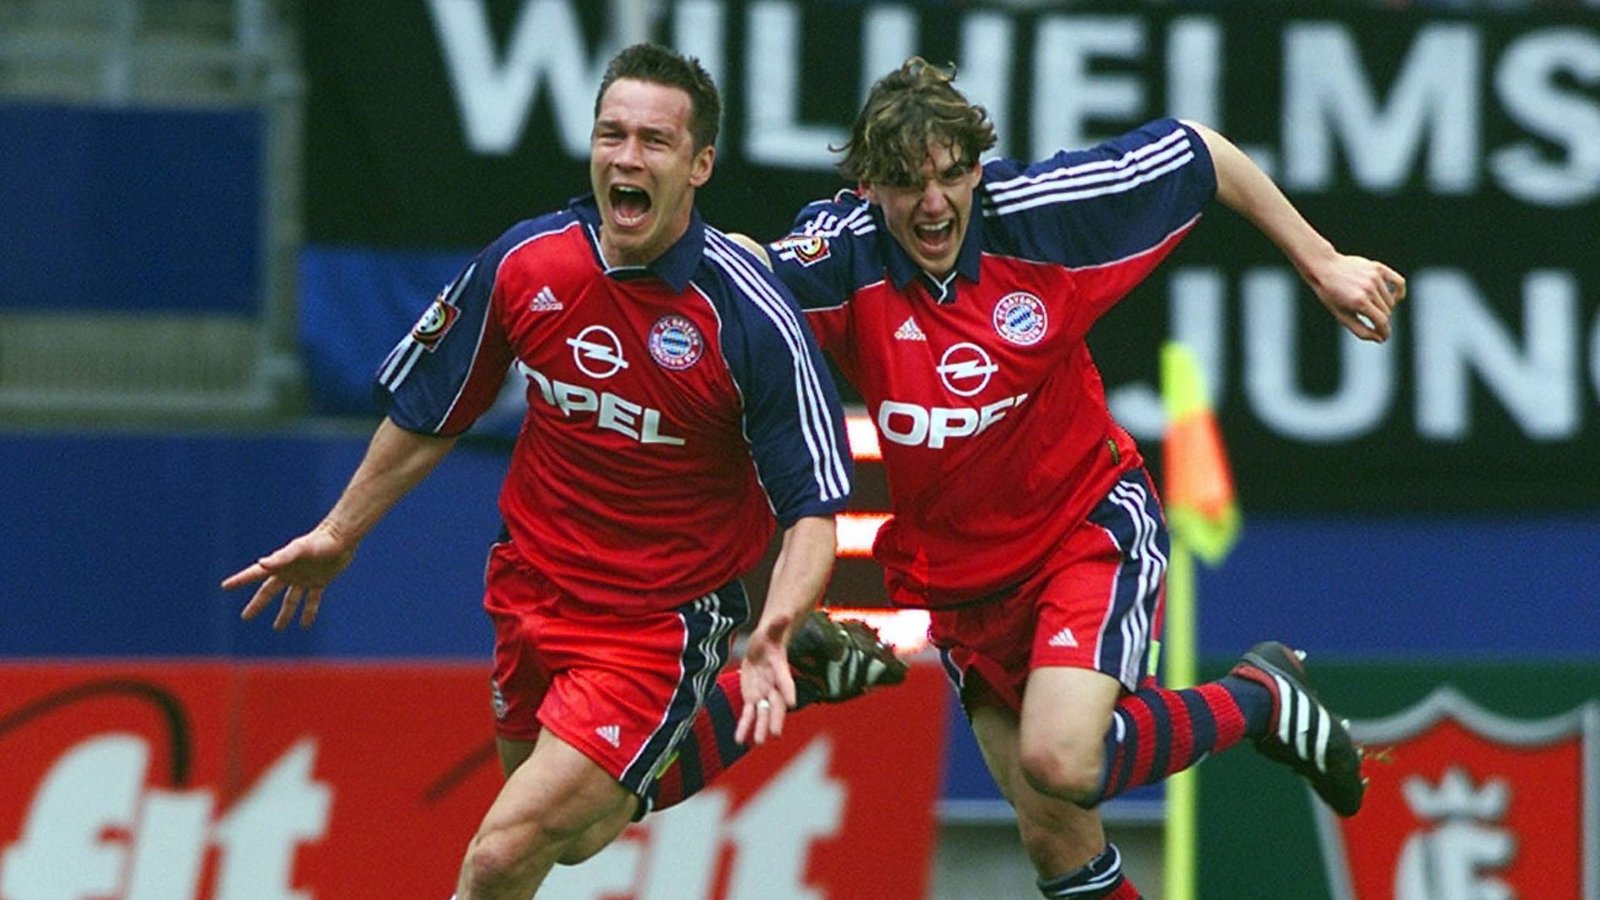 Das Tor in der Nachspielzeit von Patrik Andersson am 34. Spieltag der Saison 2000/01 sorgte für den Titel für die Bayern und die berühmte 5-Minuten-Meisterschaft von Schalke 04.Foto: imago images/Pressefoto Baumann/imago sportfotodienst